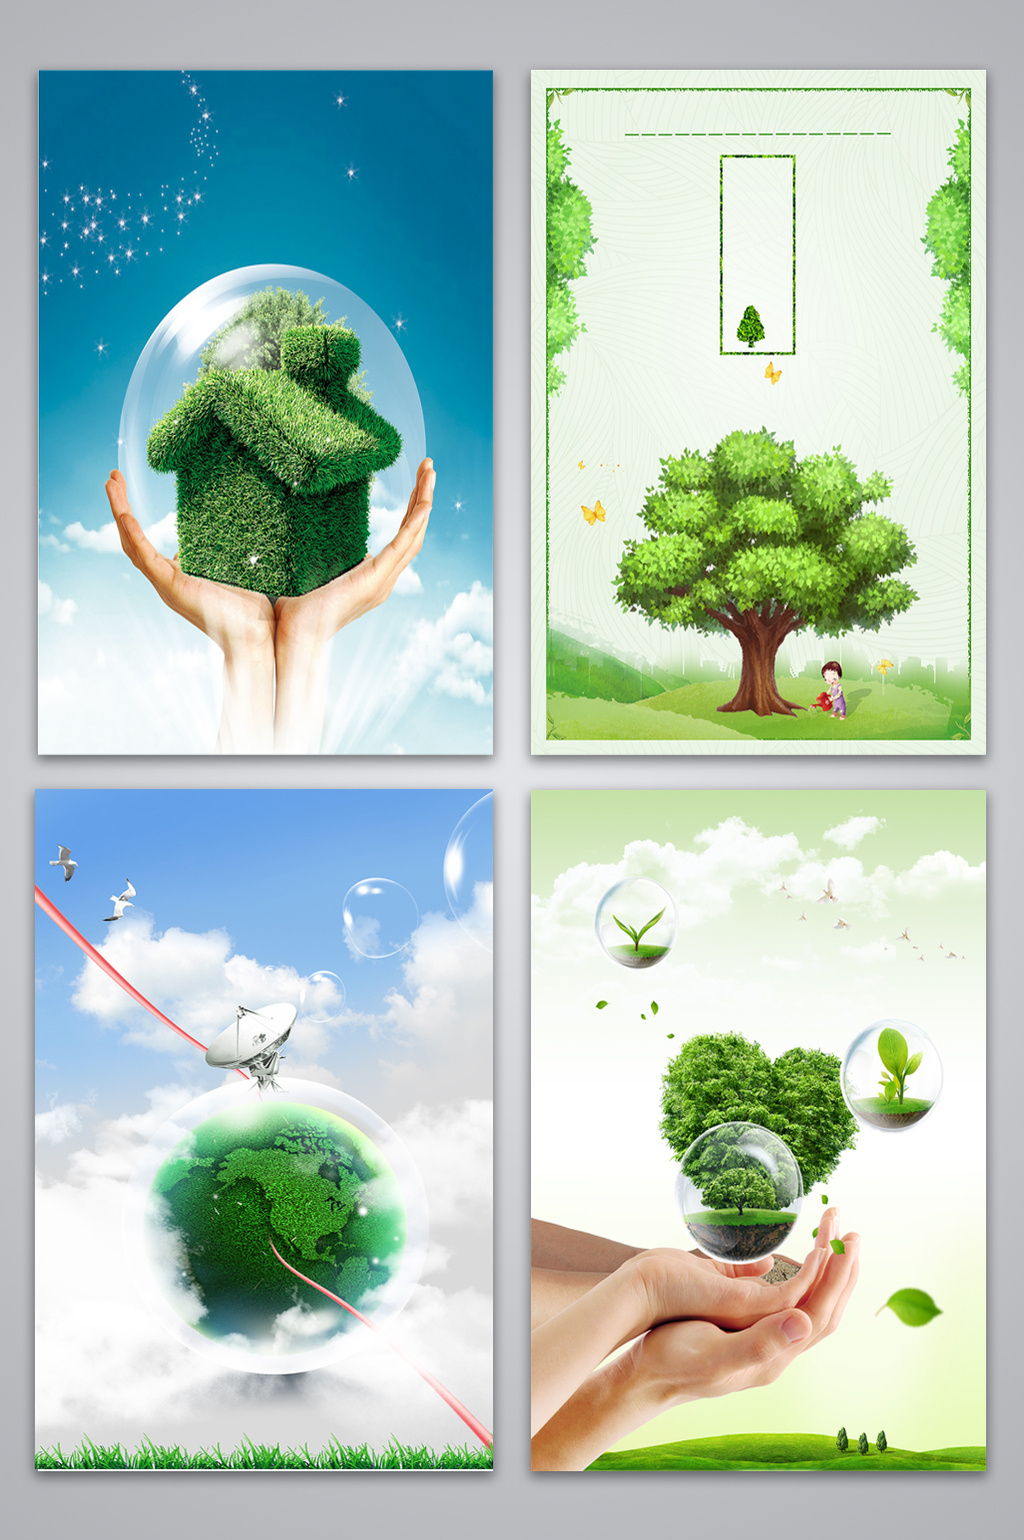 绿色创意爱护环境4月22日世界地球日公益海报图片下载 - 觅知网